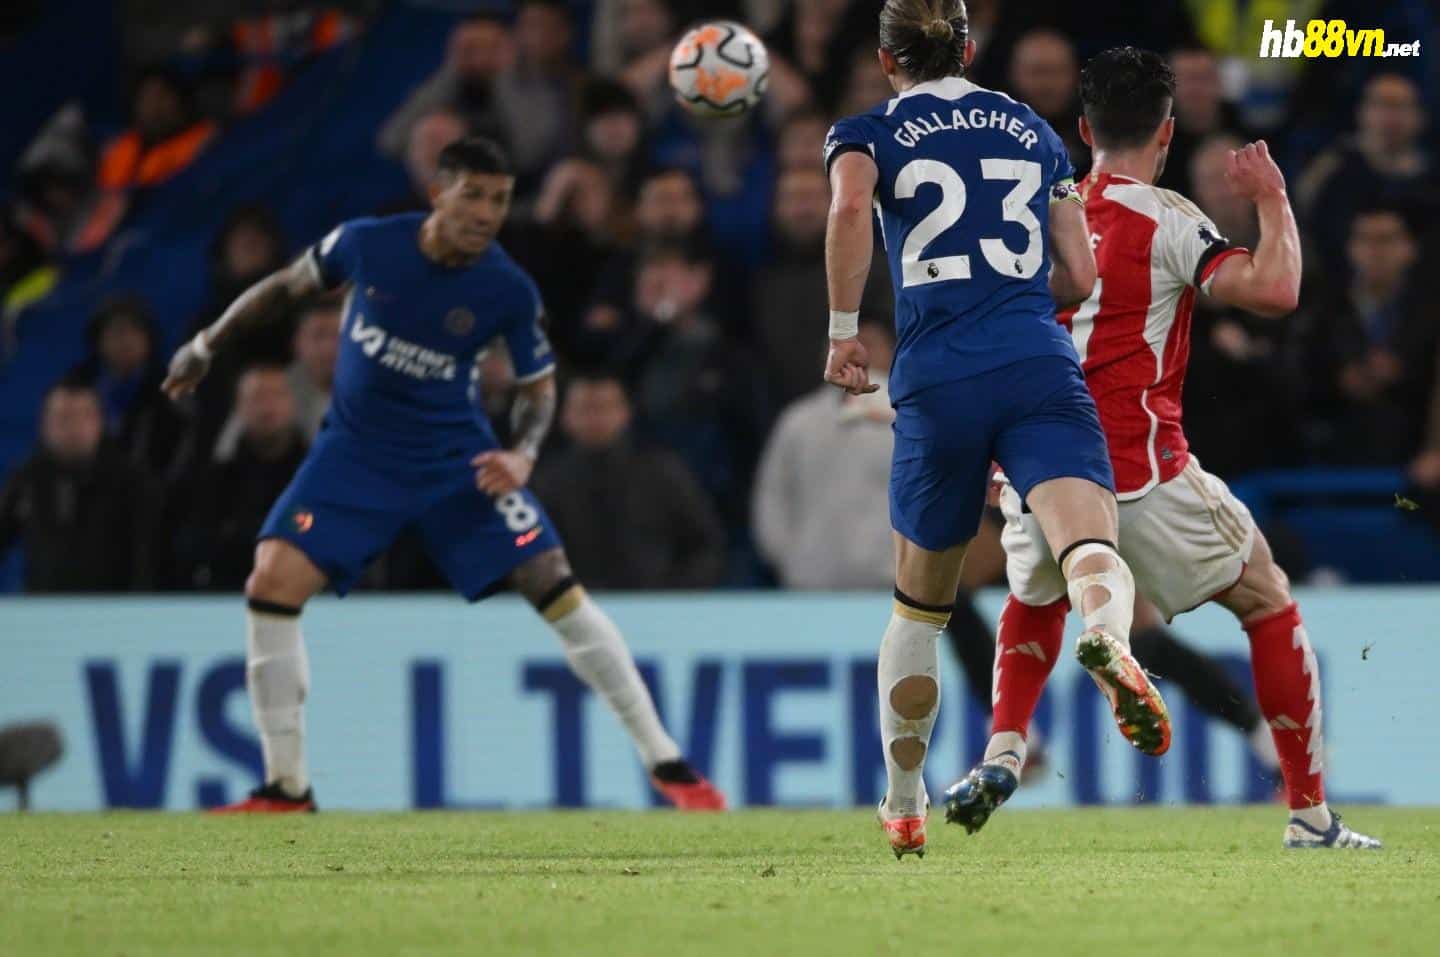 Rice (áo đỏ) trong pha dứt điểm rút ngắn tỷ số còn 1-2 cho Arsenal ở trận hòa chủ nhà Chelsea 2-2 tại Stamford Bridge ngày 21/10. Ảnh: EPA